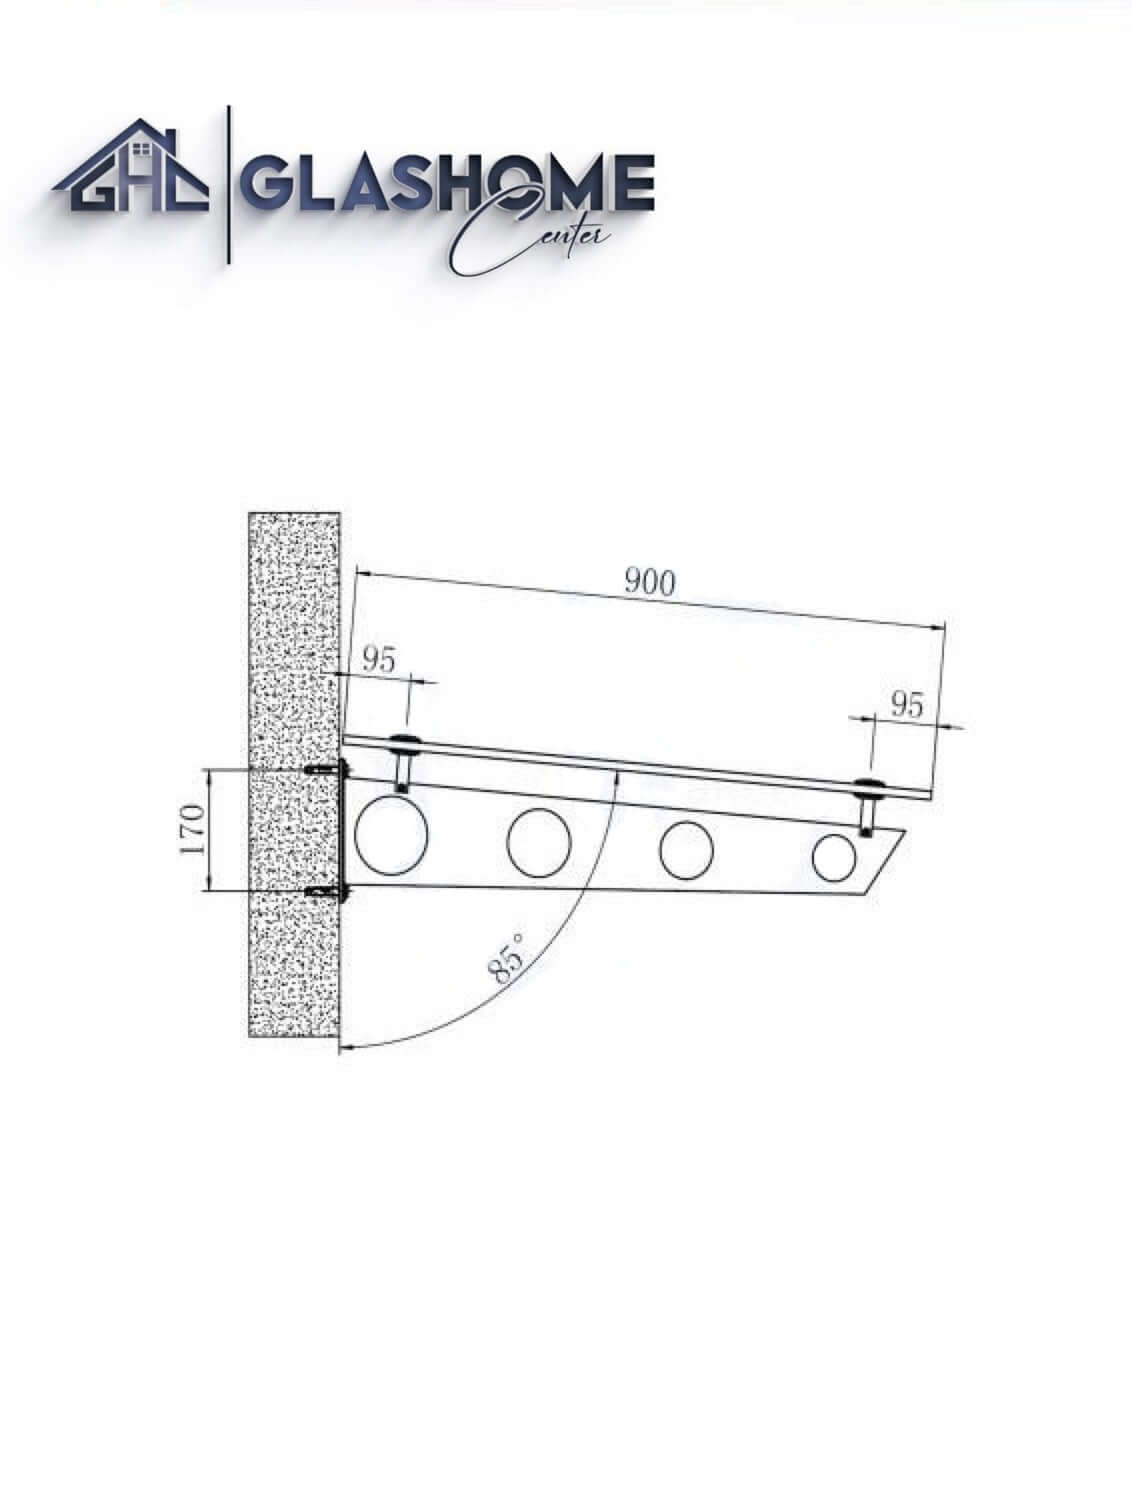 GlasHomeCenter - Glasvordach - Milchglas - 200x90cm - 13.1mm VSG - inkl. 3 Edelstahlhalterungen Variante "Stockholm"